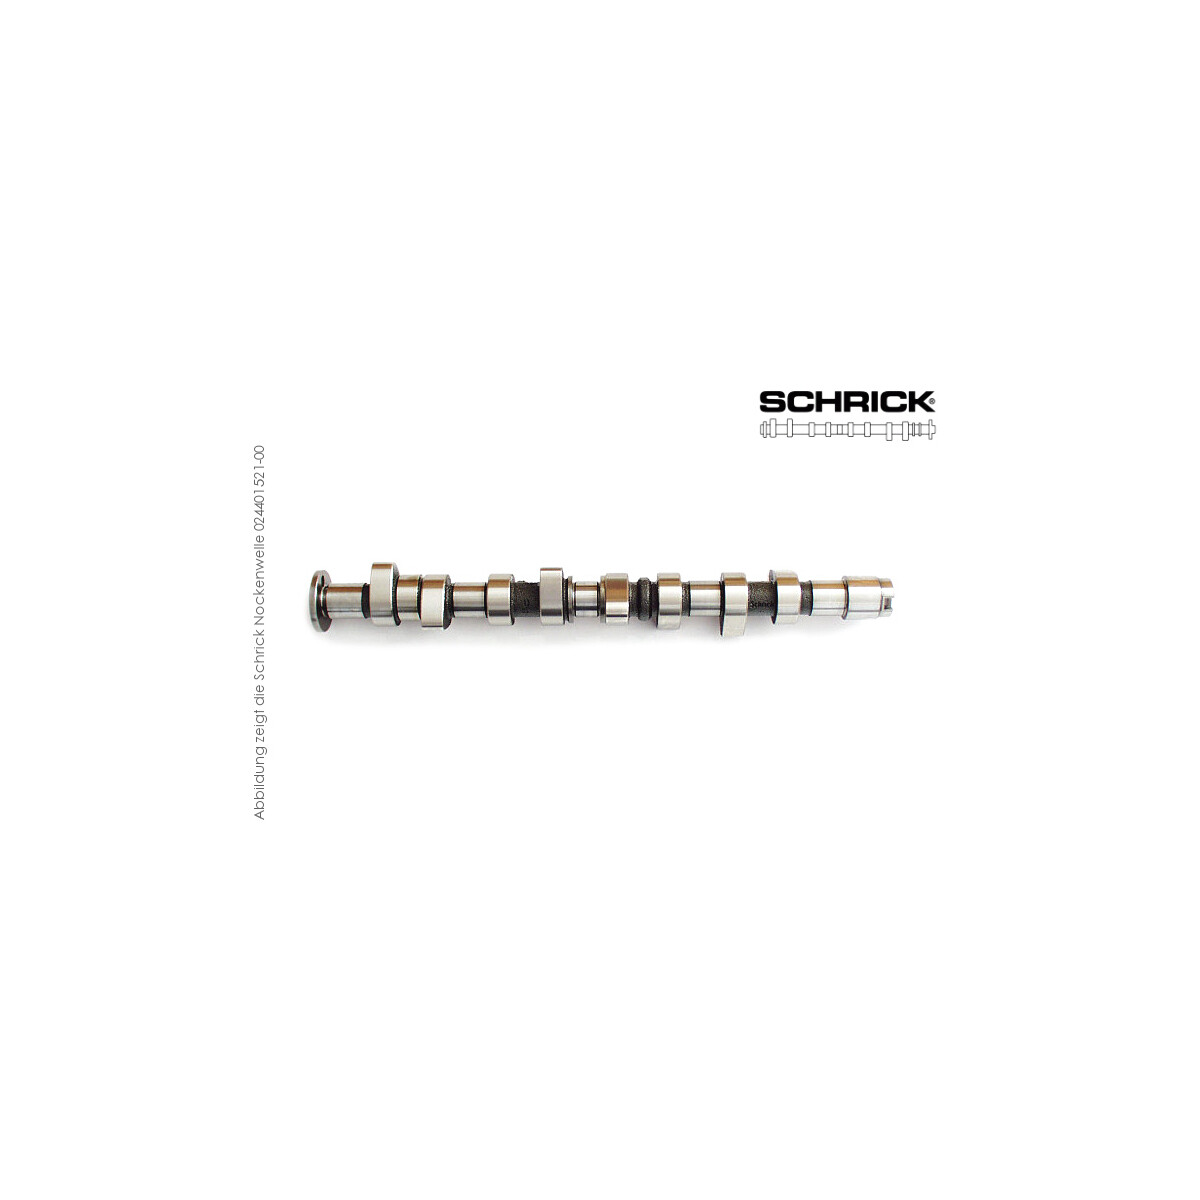 Schrick Nockenwelle für Skoda Felicia | 1,0-1,6L 8V 4-Zyl. 111  | 264° / 260° Asynchron (Schrick 024401641-03)